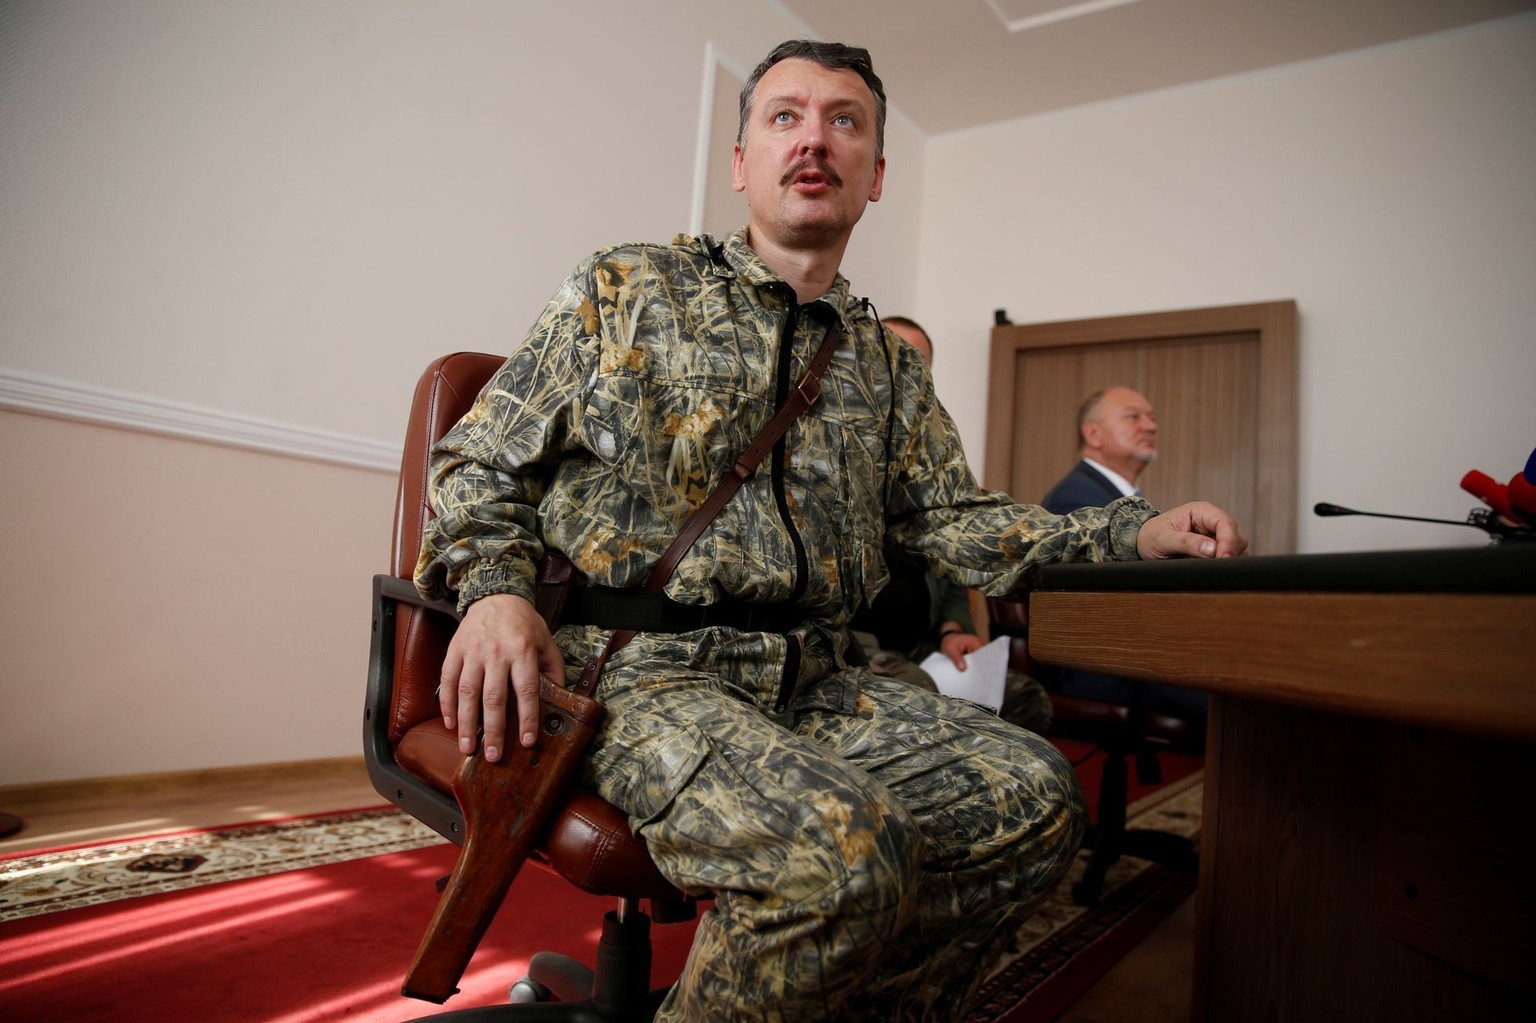 L'Ukraine a promis 100 000 dollars pour la capture d'Igor Girkin, alias Strelkov, ancien leader de la République autoproclamée de Donietsk.